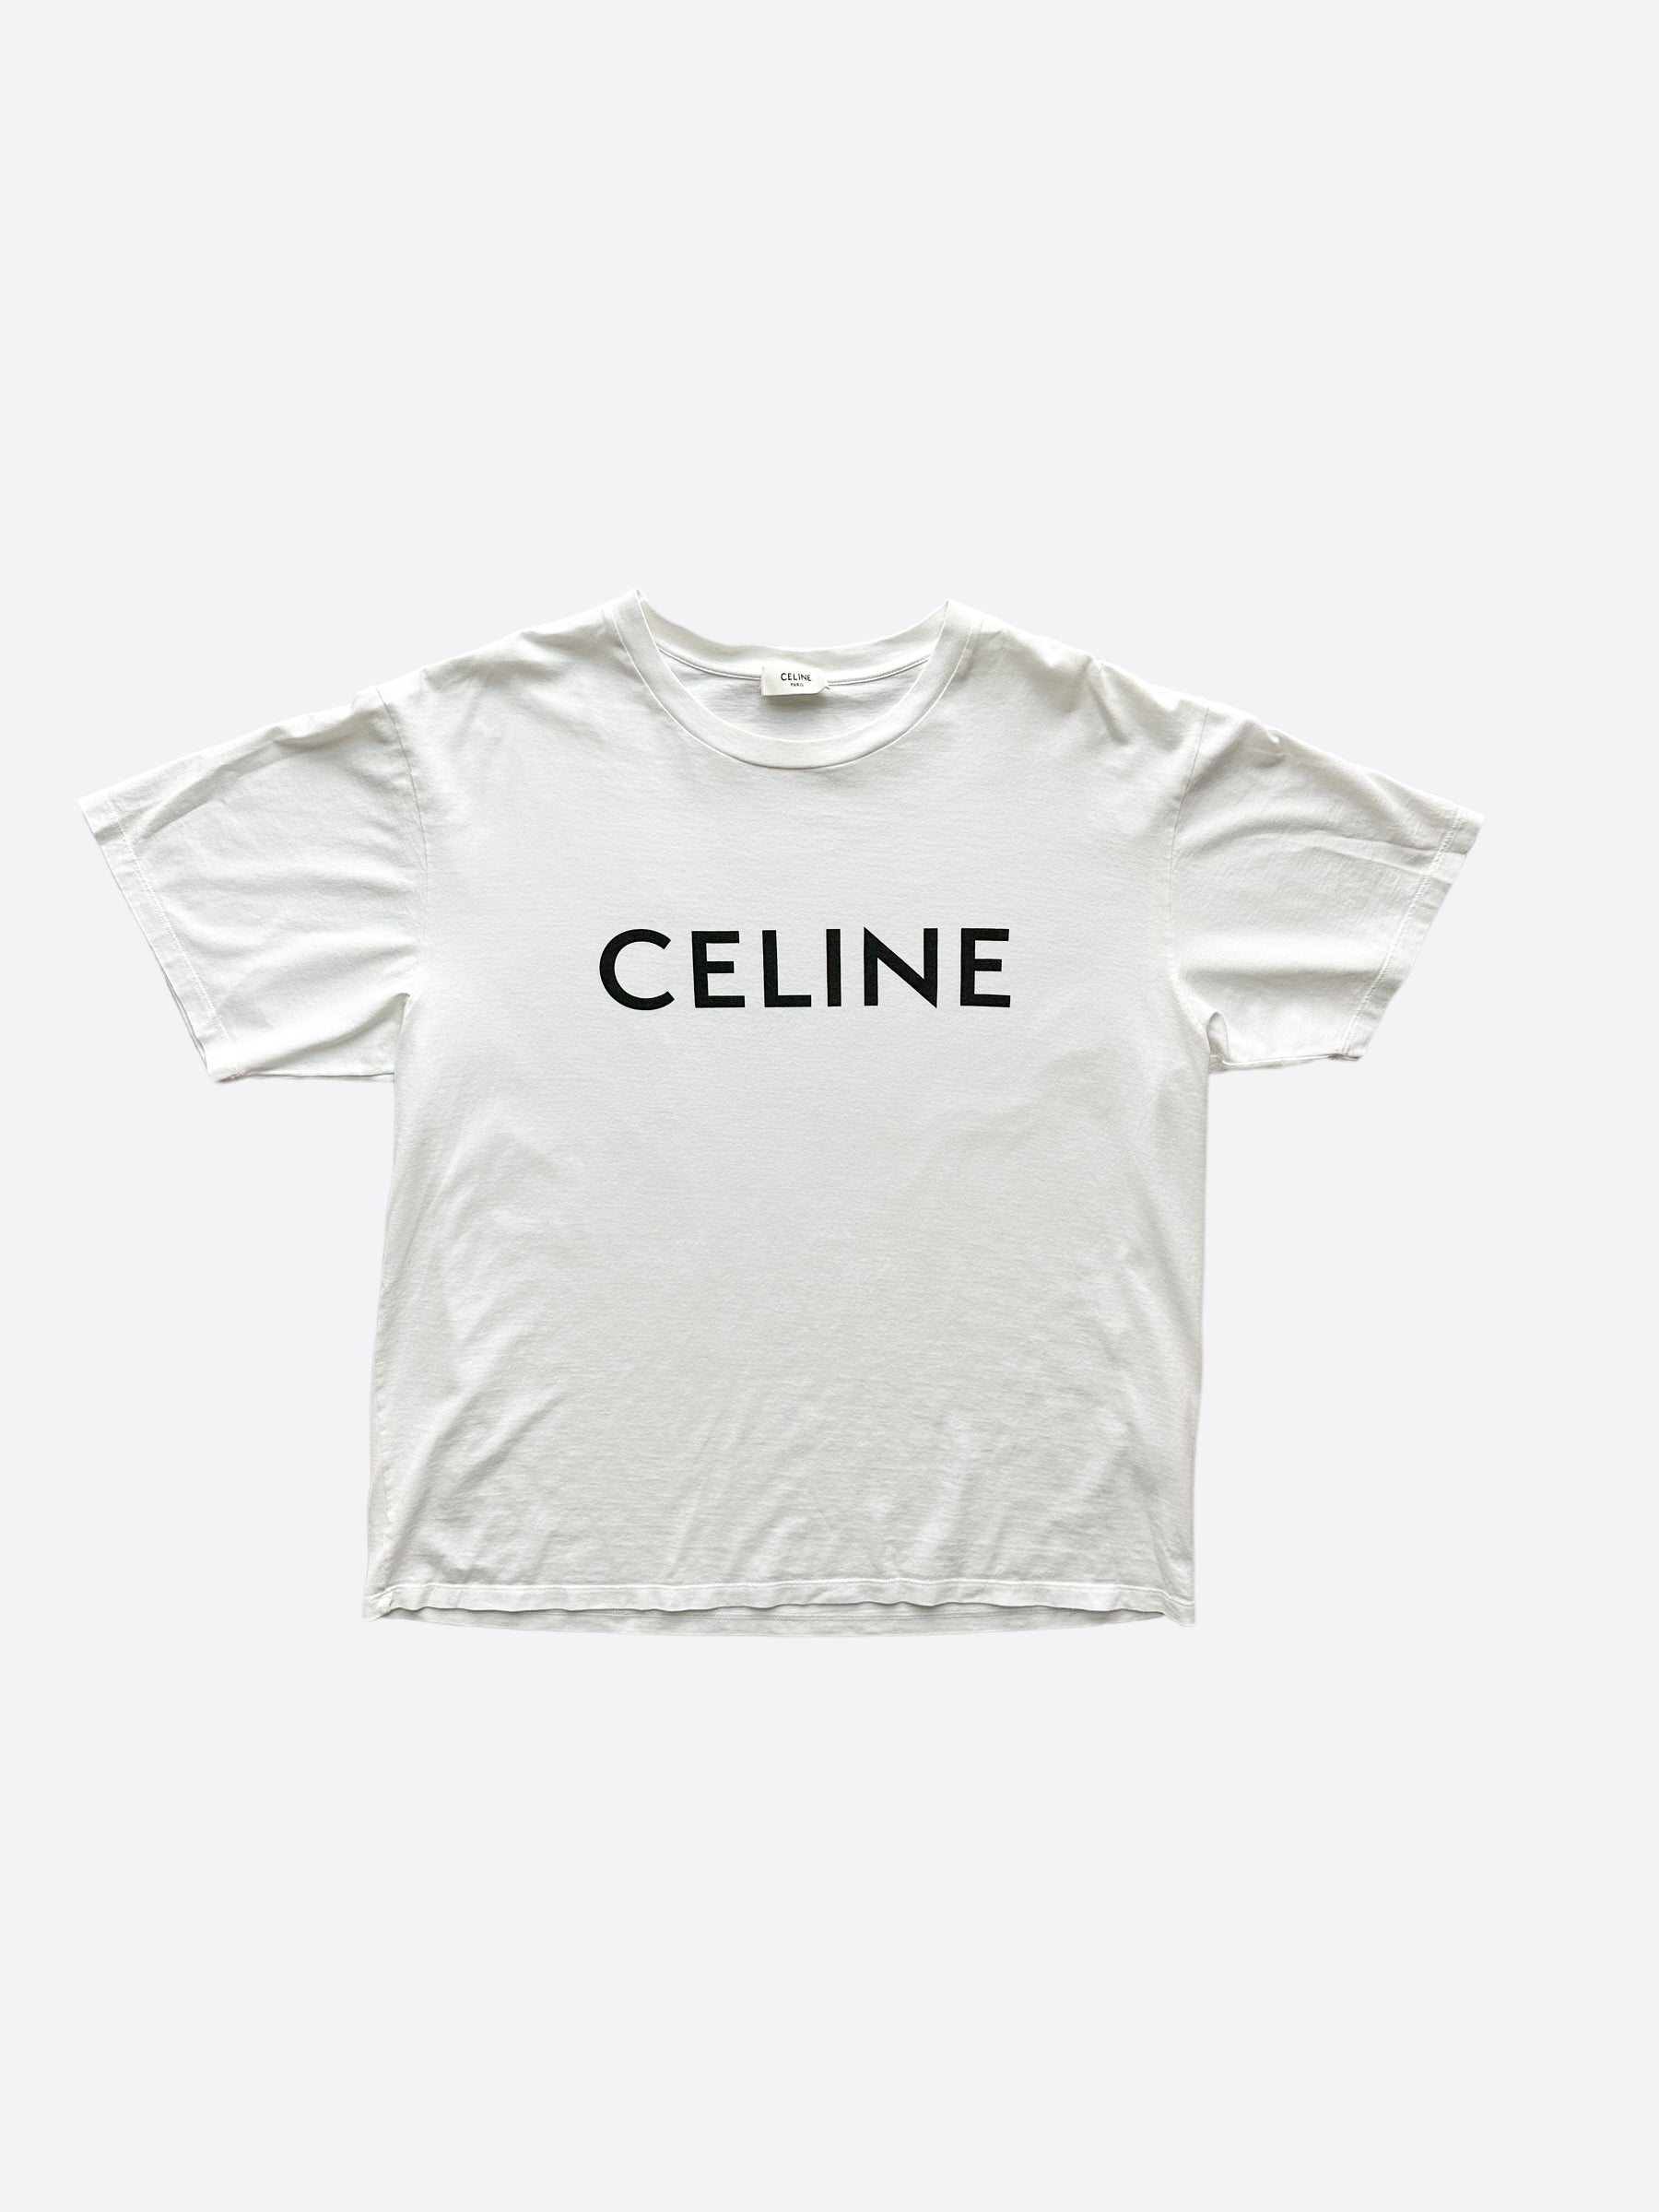 Celine White & Black Logo T-Shirt